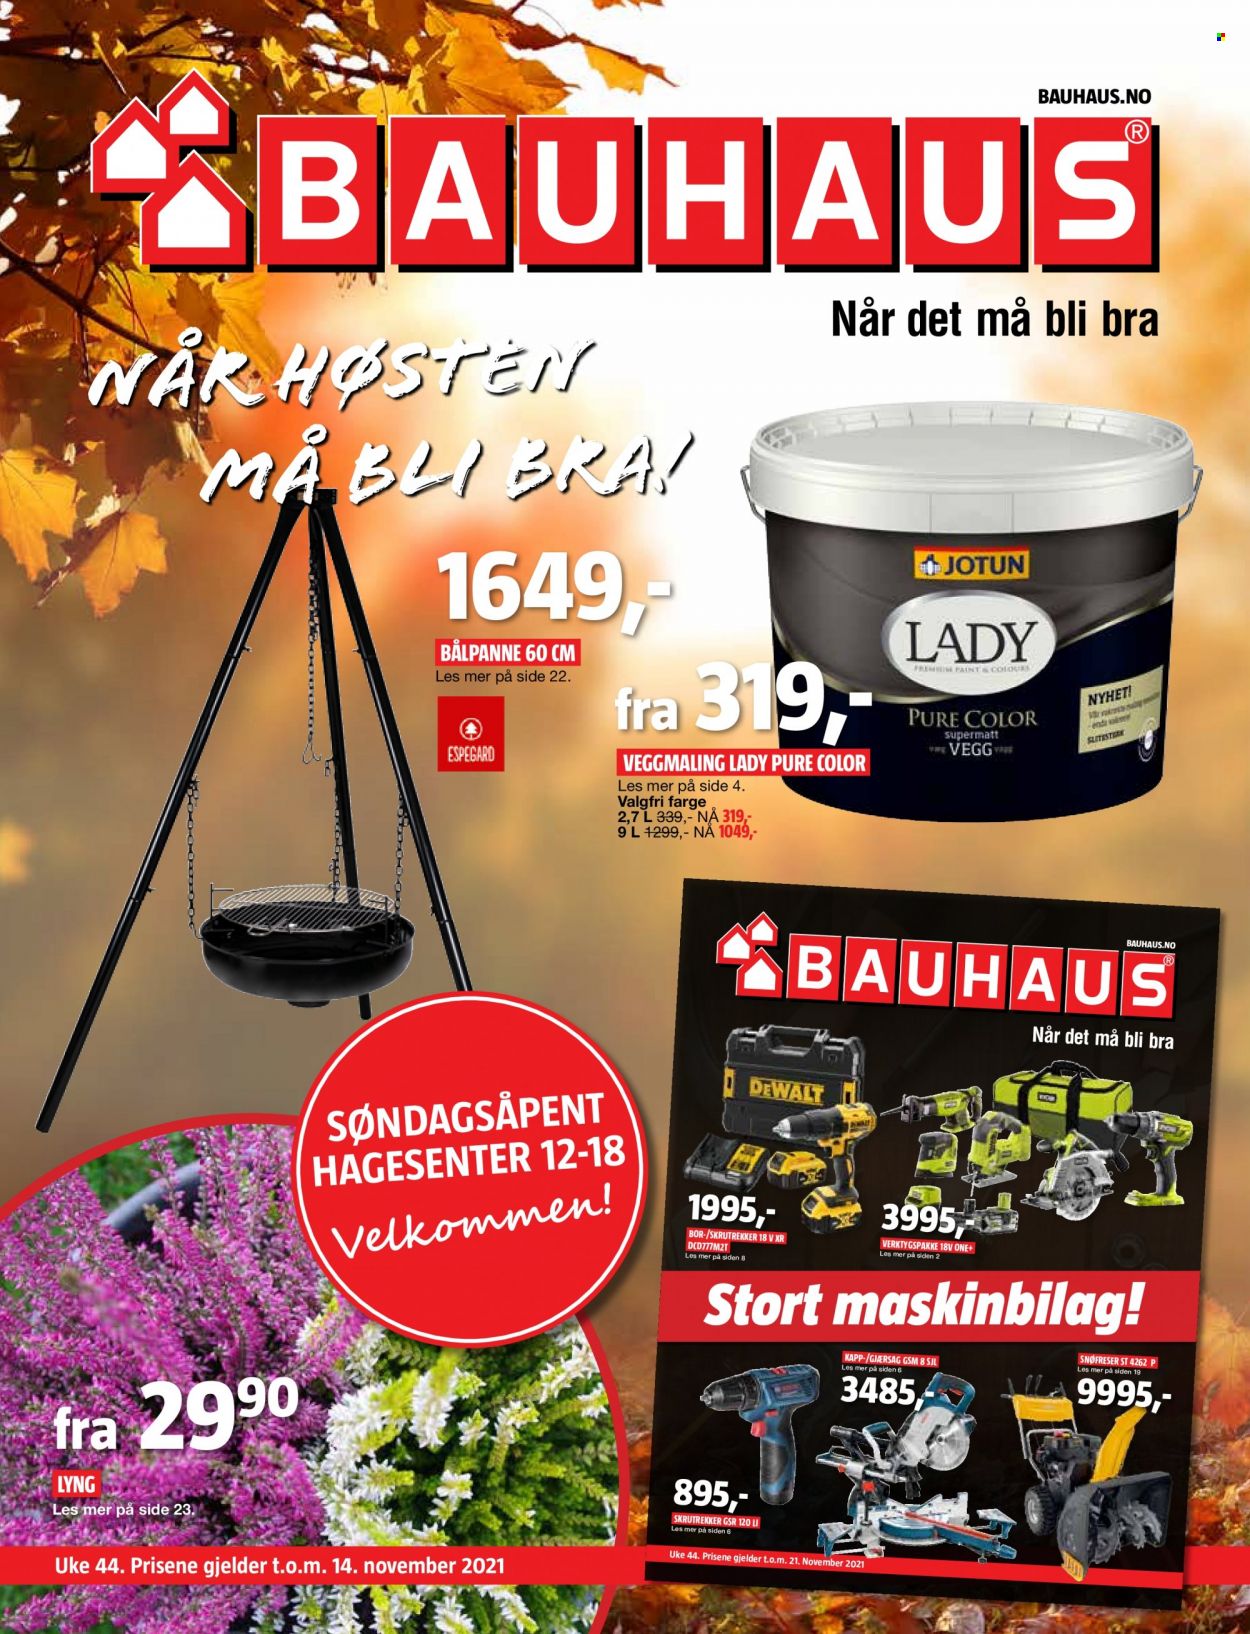 thumbnail - Kundeavis Bauhaus - 2.11.2021 - 14.11.2021 - Produkter fra tilbudsaviser - Espegard, Jotun, veggmaling, skrutrekker, bålpanne. Side 1.